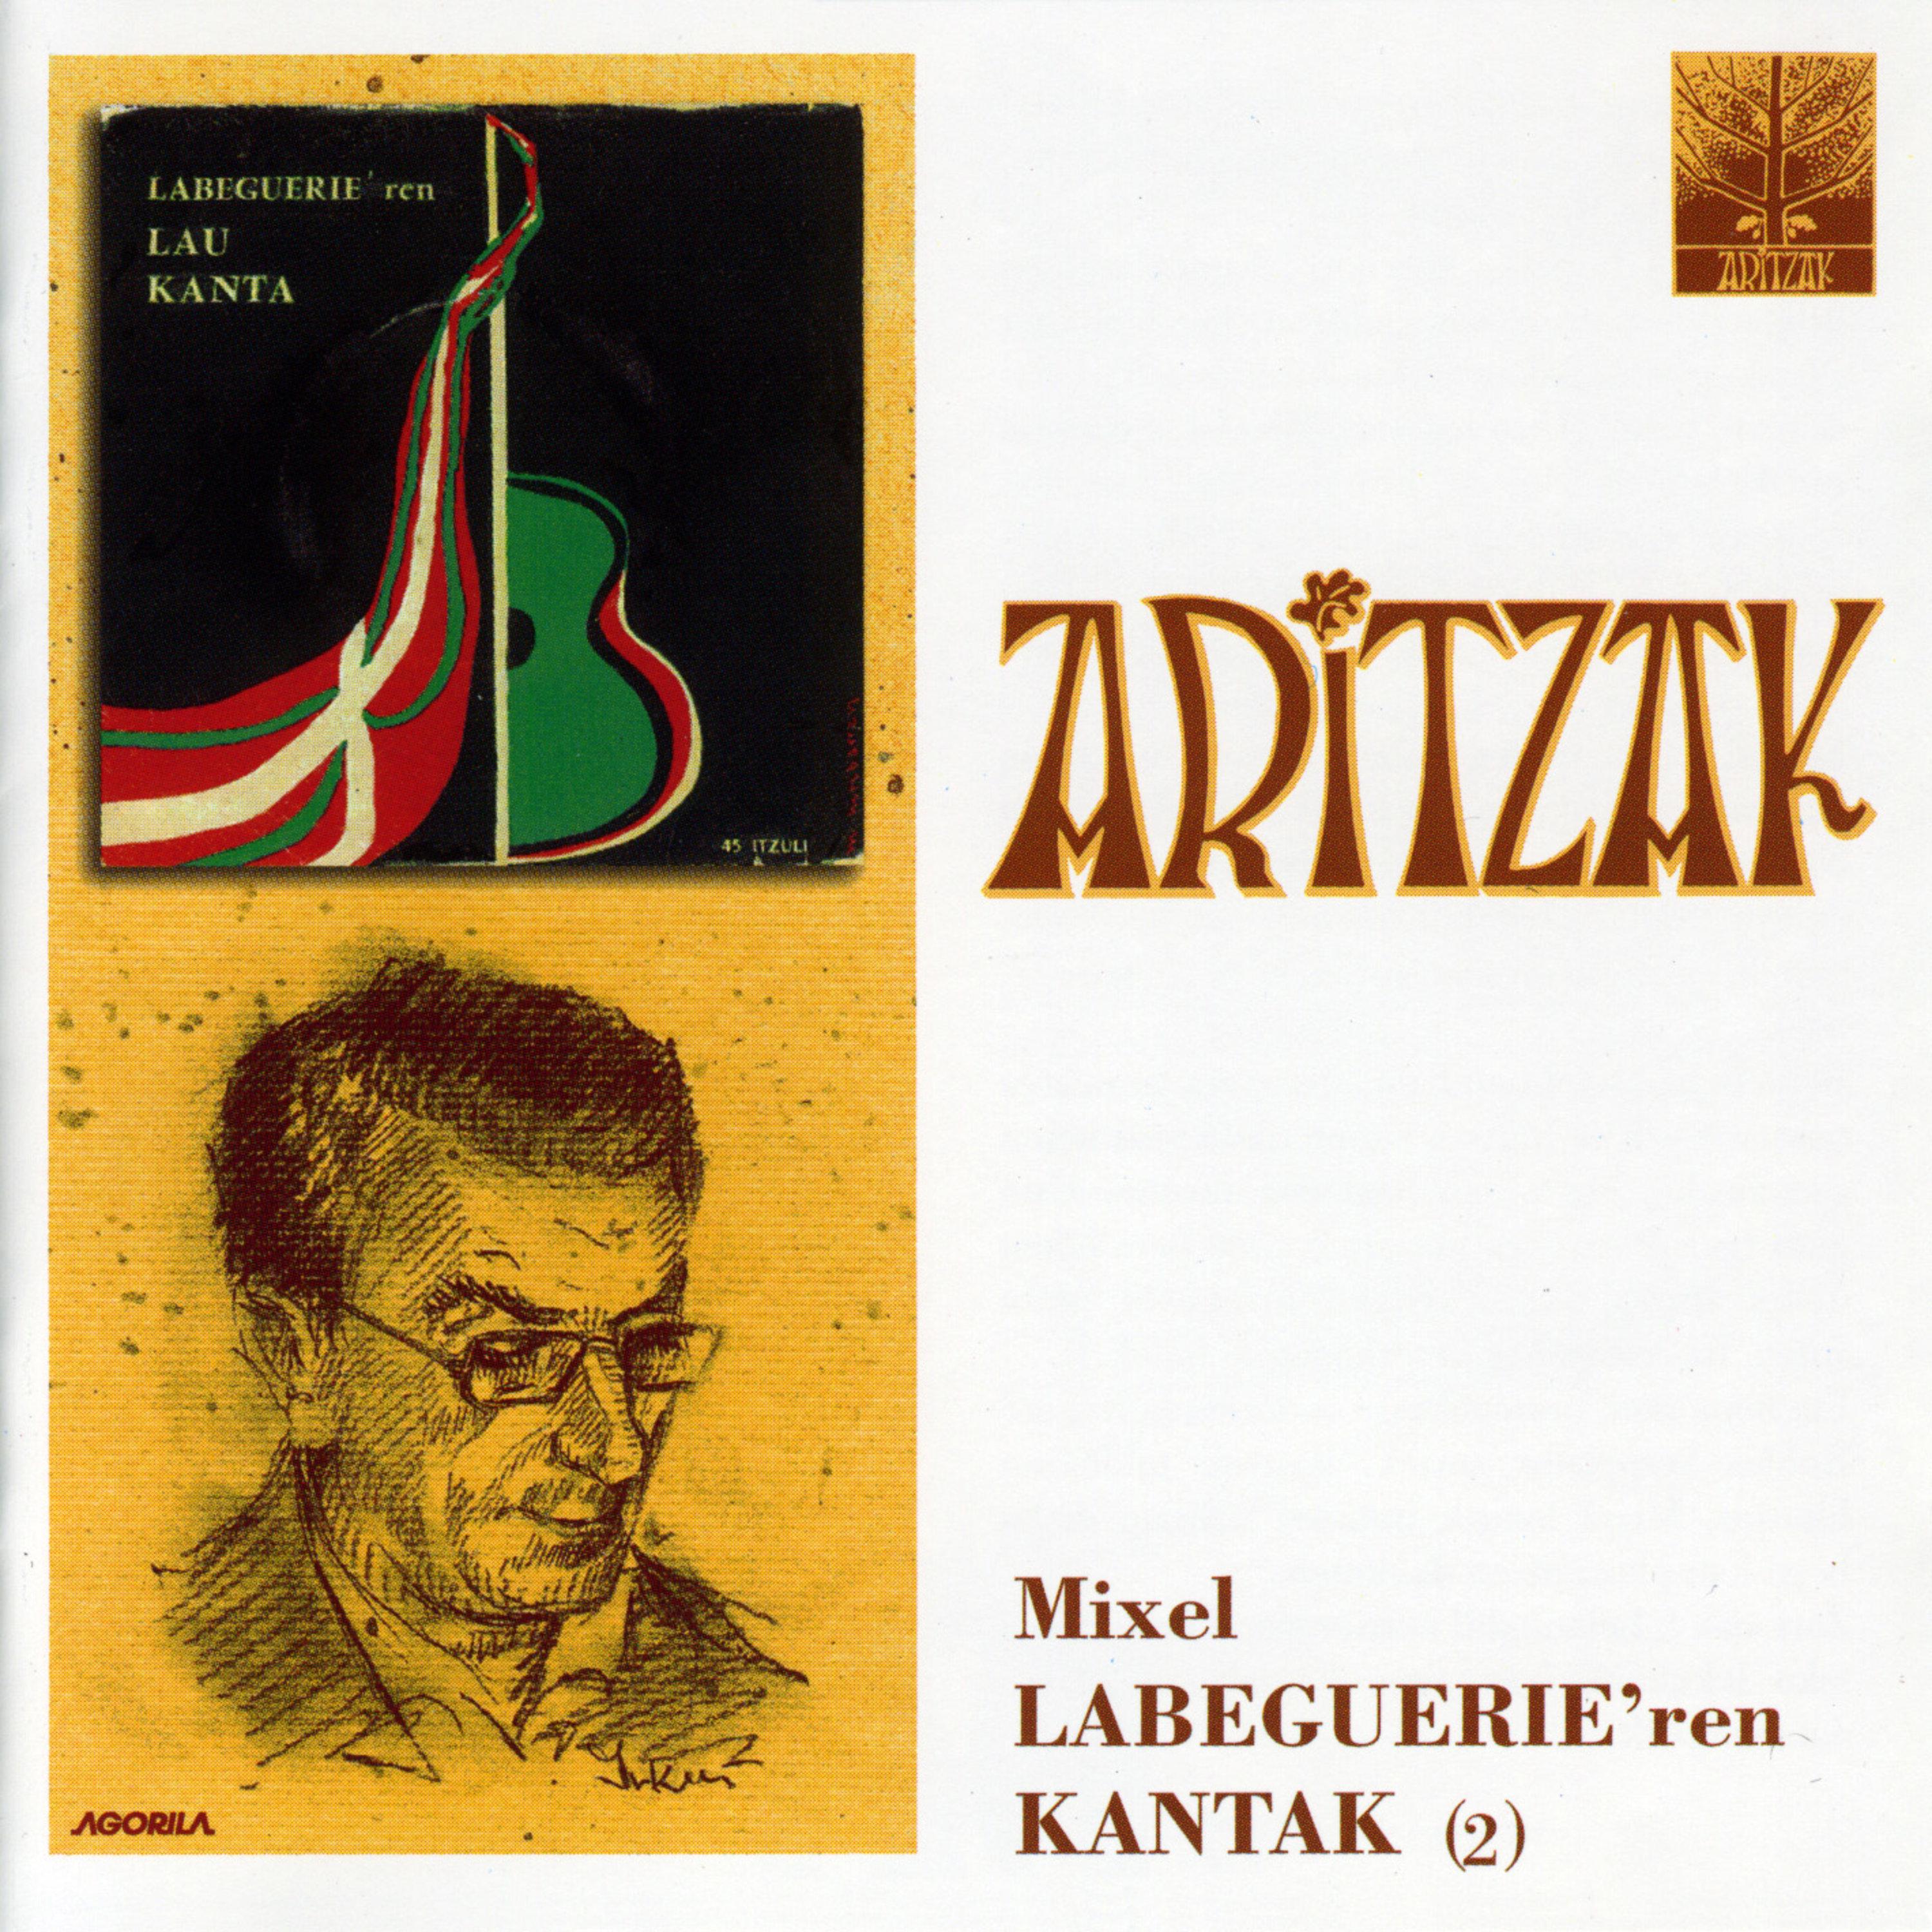 Aritzak - Ezkilaren kantua